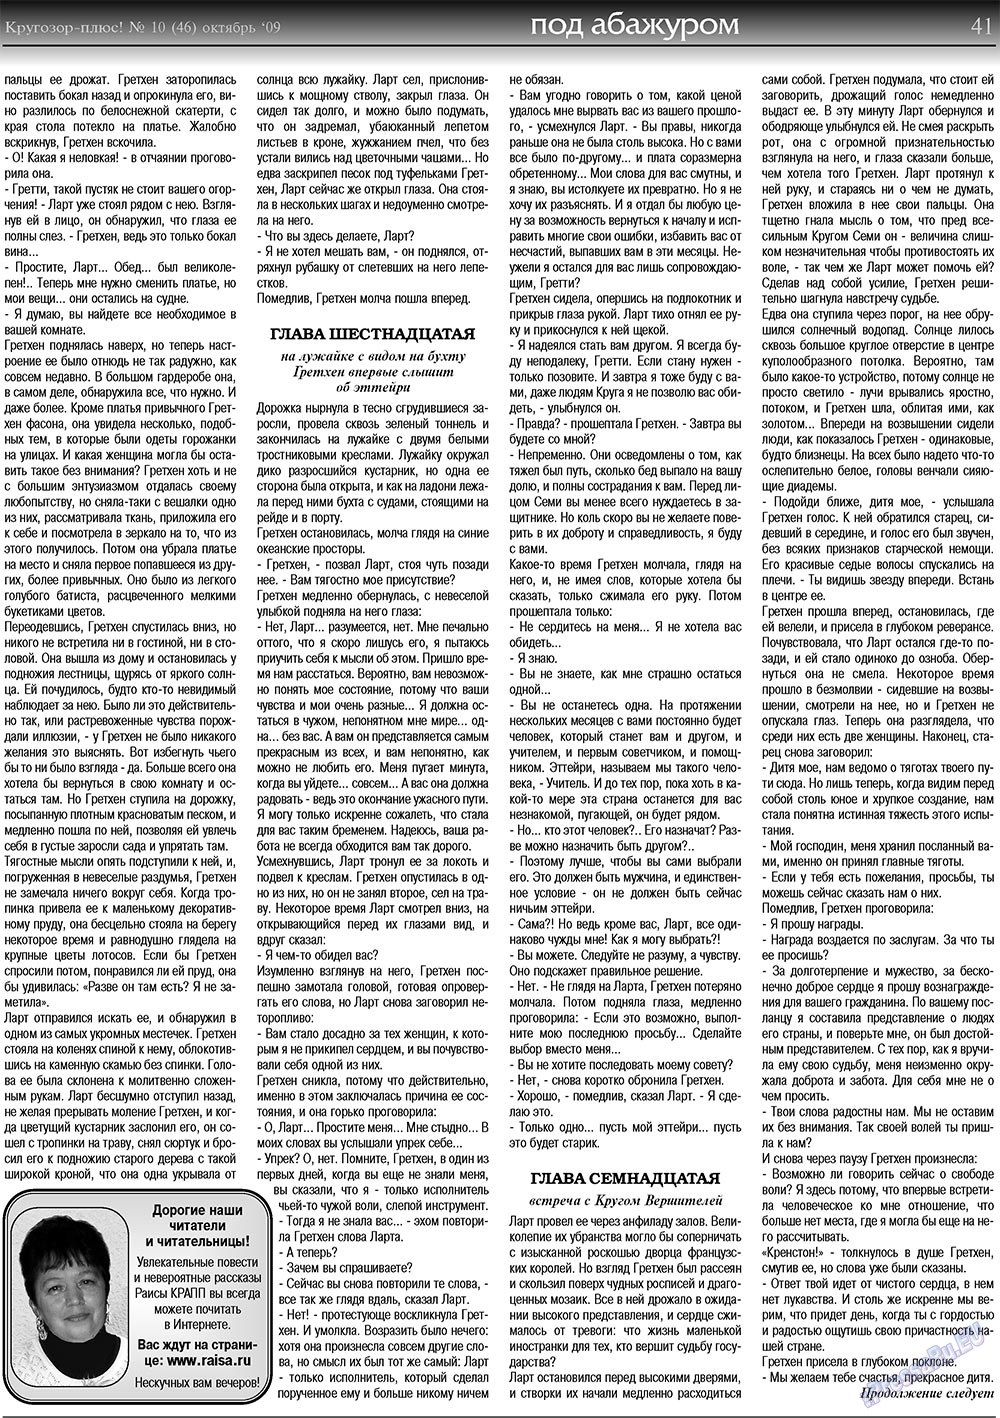 Кругозор плюс!, газета. 2009 №10 стр.41